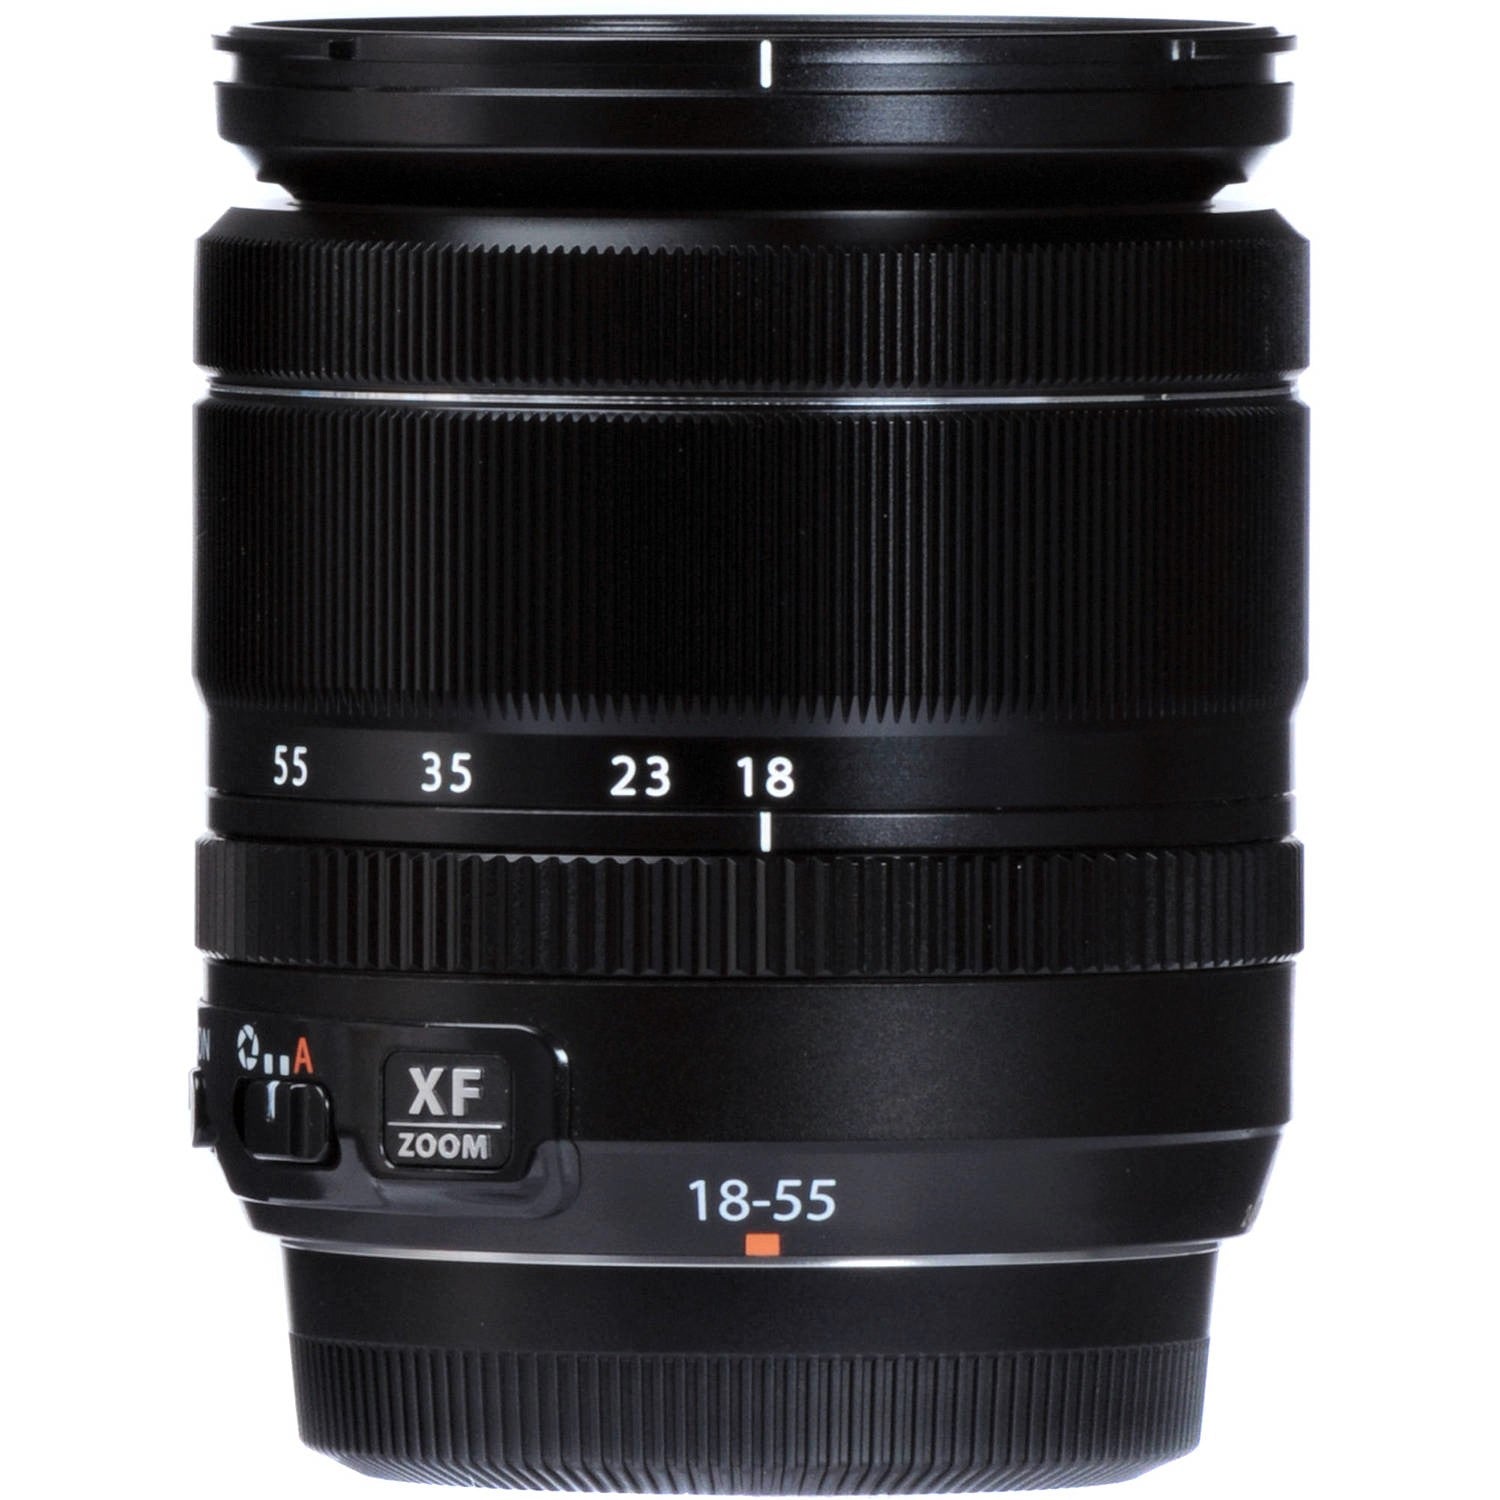 Fujifilm XF 18-55mm f/2.8-4 R LM OIS Lens, Black